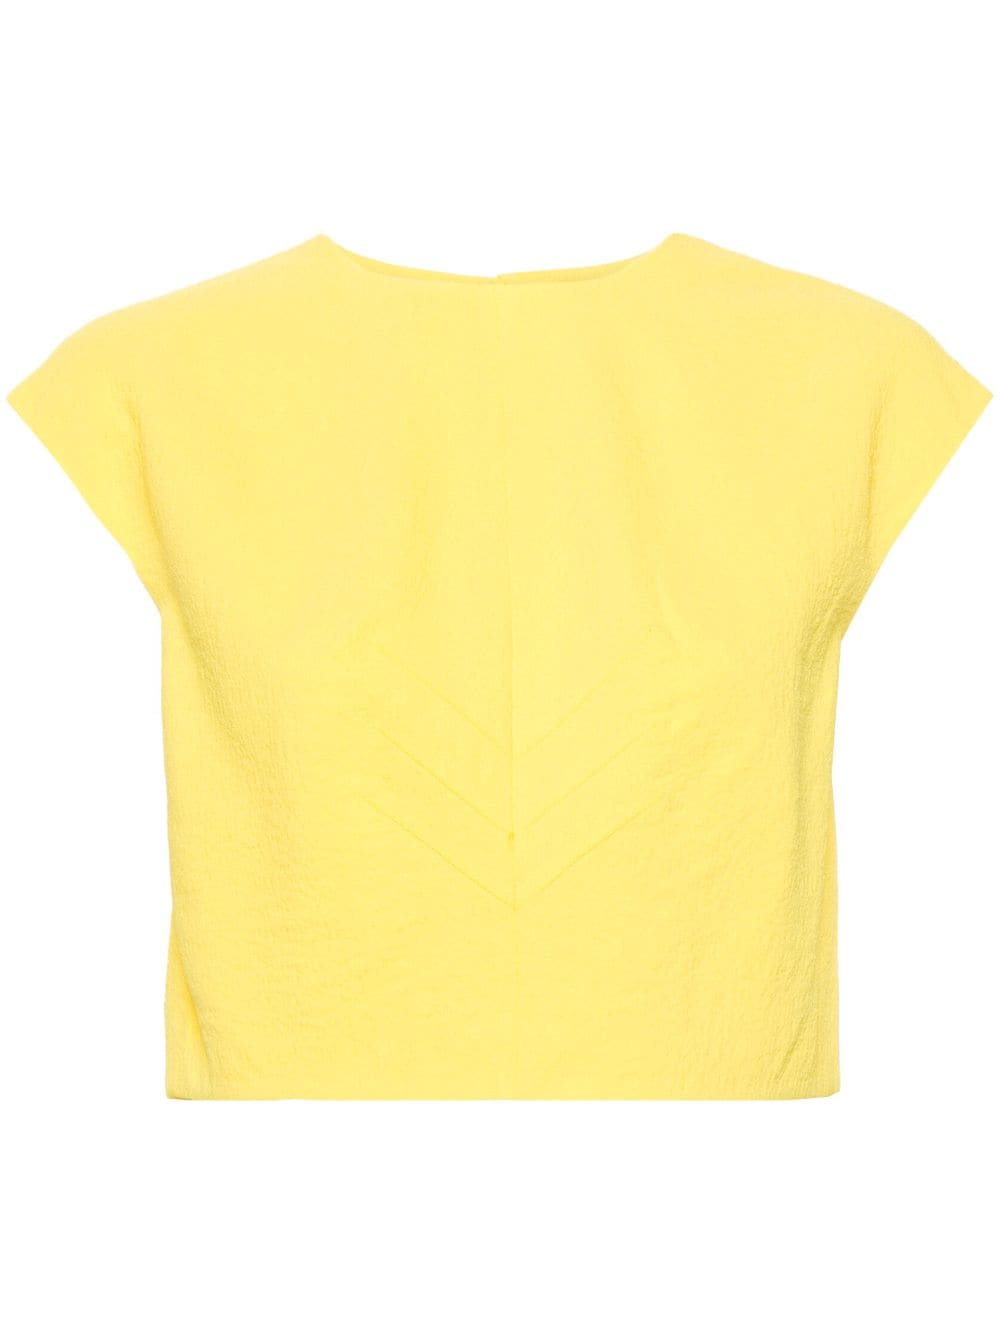 Emilia Wickstead Veronique crepe blouse - Yellow von Emilia Wickstead